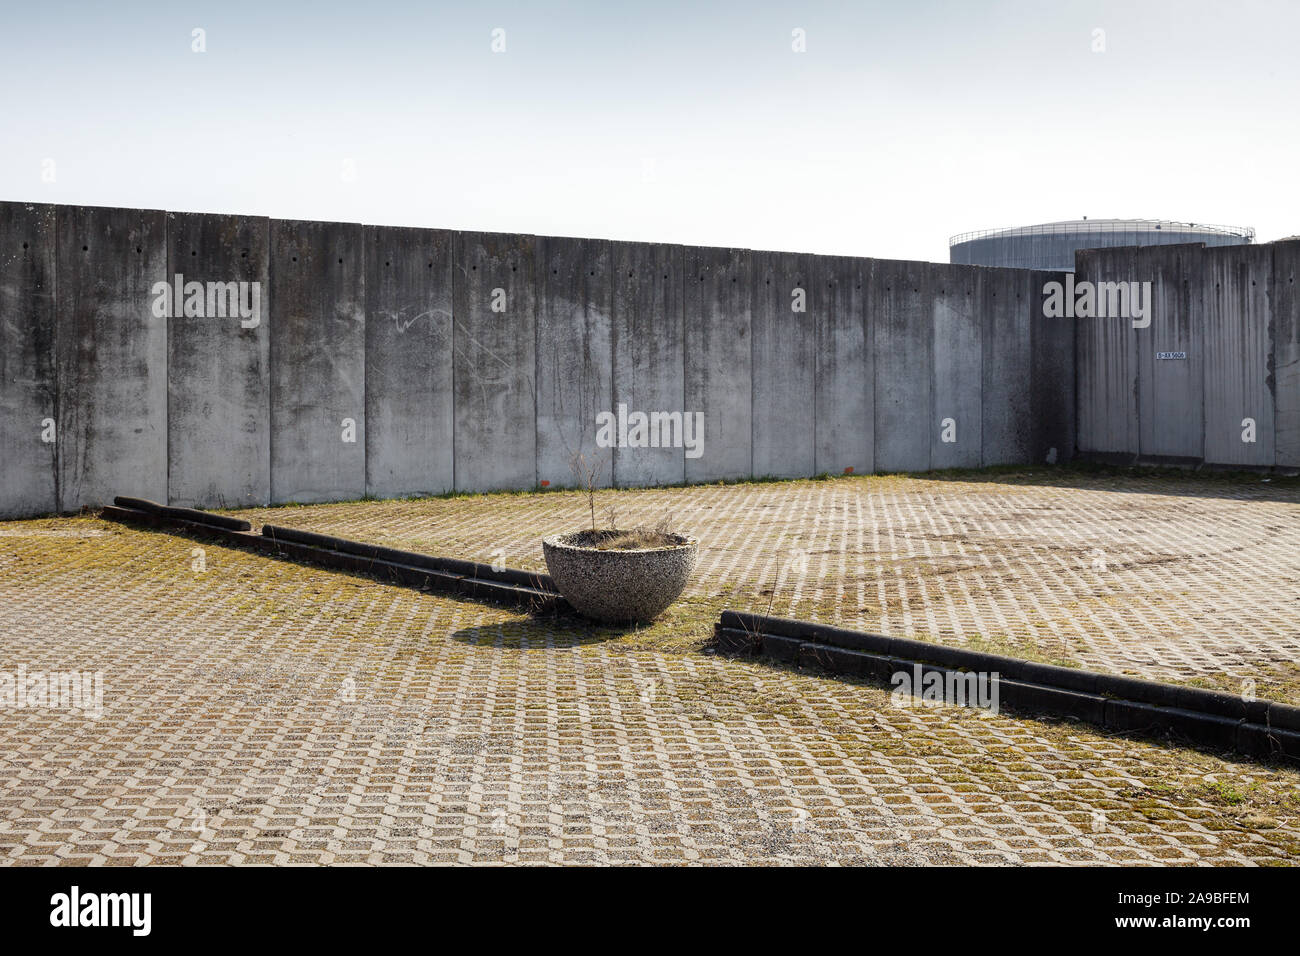 25.03.2018, Berlin, Berlin, Allemagne - mur de béton autour de l'entrepôt de gravier dans Sophienwerderweg à Berlin-Spandau. 00P180325D200CAROEX.JPG [MODEL Banque D'Images